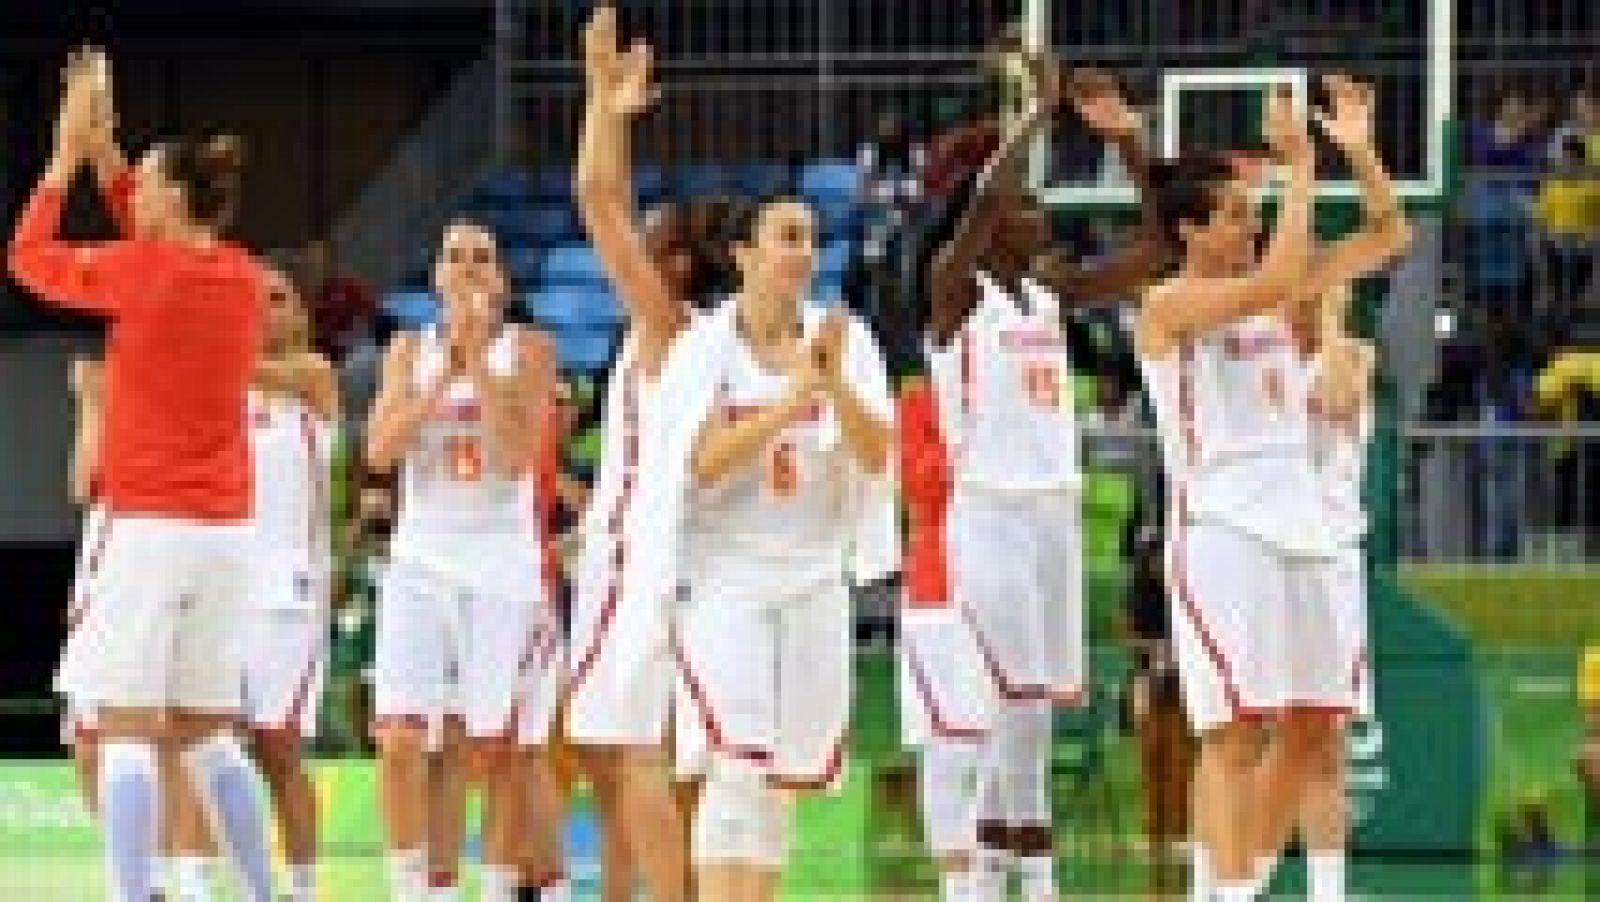 La selección femenina de baloncesto se ha clasificado a la semifinal tras eliminar a Turquía (64-62) Las españolas han remontado en el último cuarto un partido que se les había puesto cuesta arriba. A falta de un segundo, una canasta de Cruz ha dado la victoria a España. 